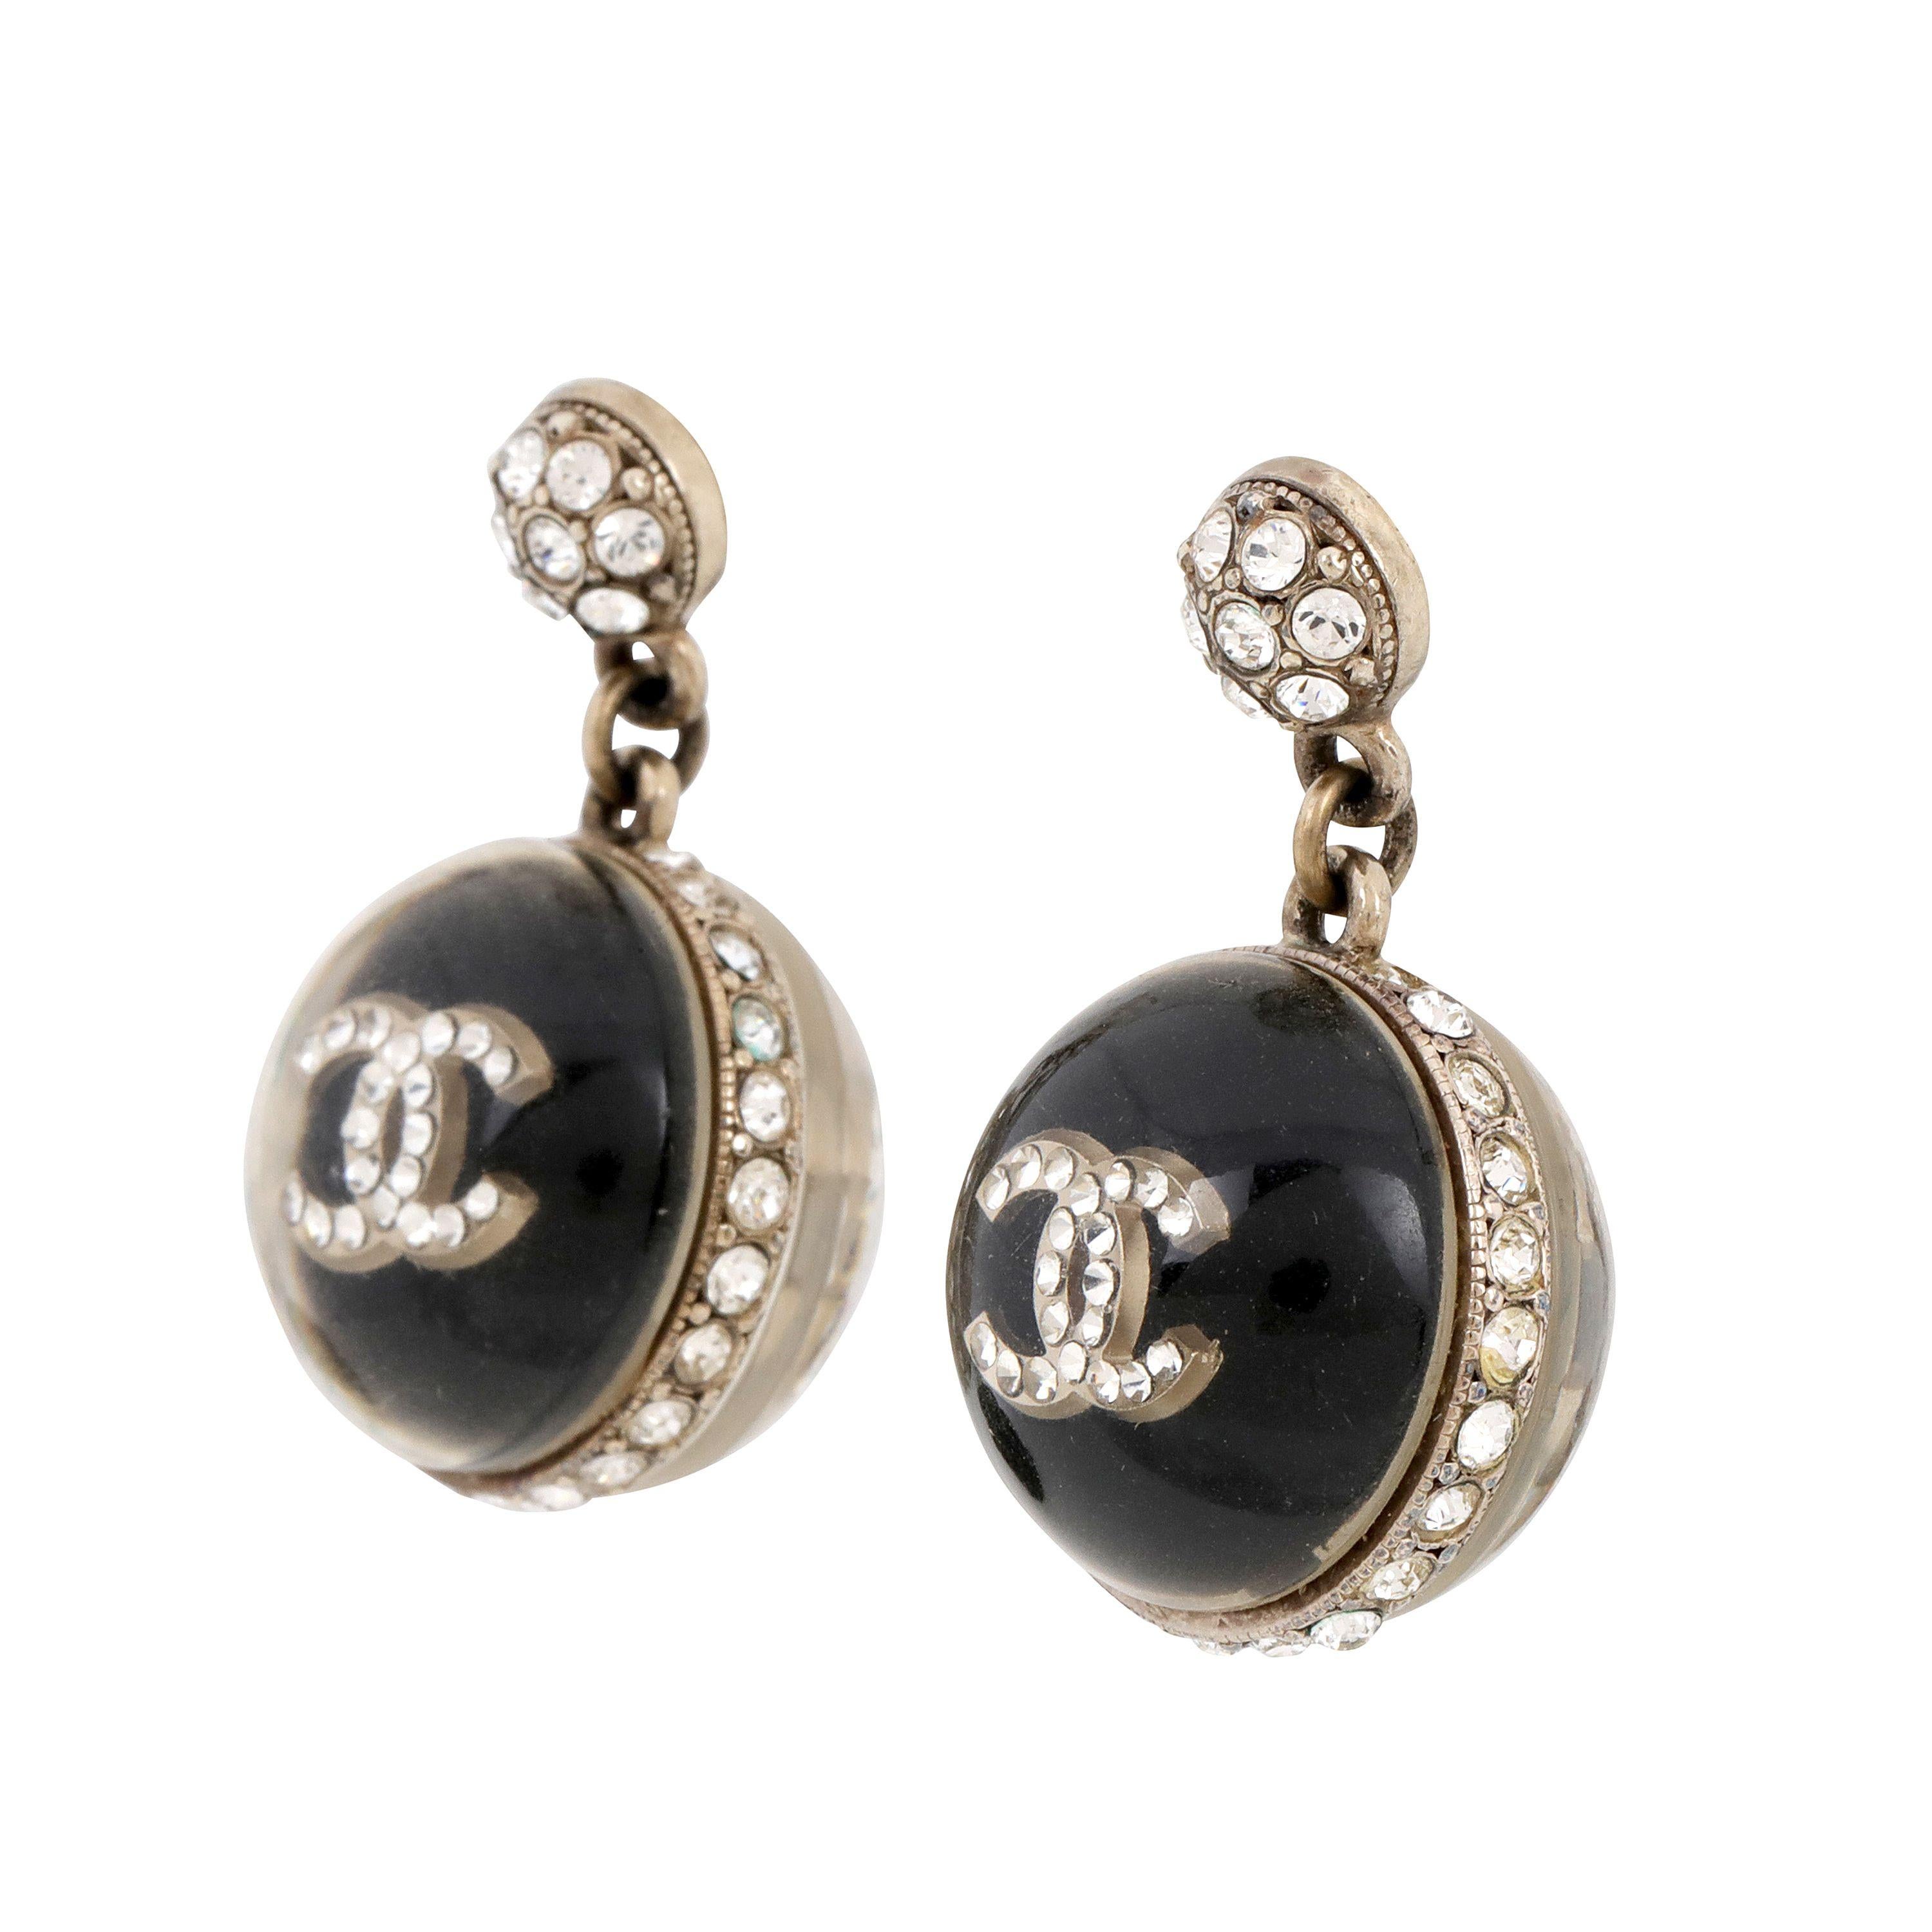 Diese sind authentisch. Chanel Schwarz und Lucite CC Dangle Earrings sind in ausgezeichnetem Vintage-Zustand.  Inklusive Tasche oder Box. 

PBF 14023

